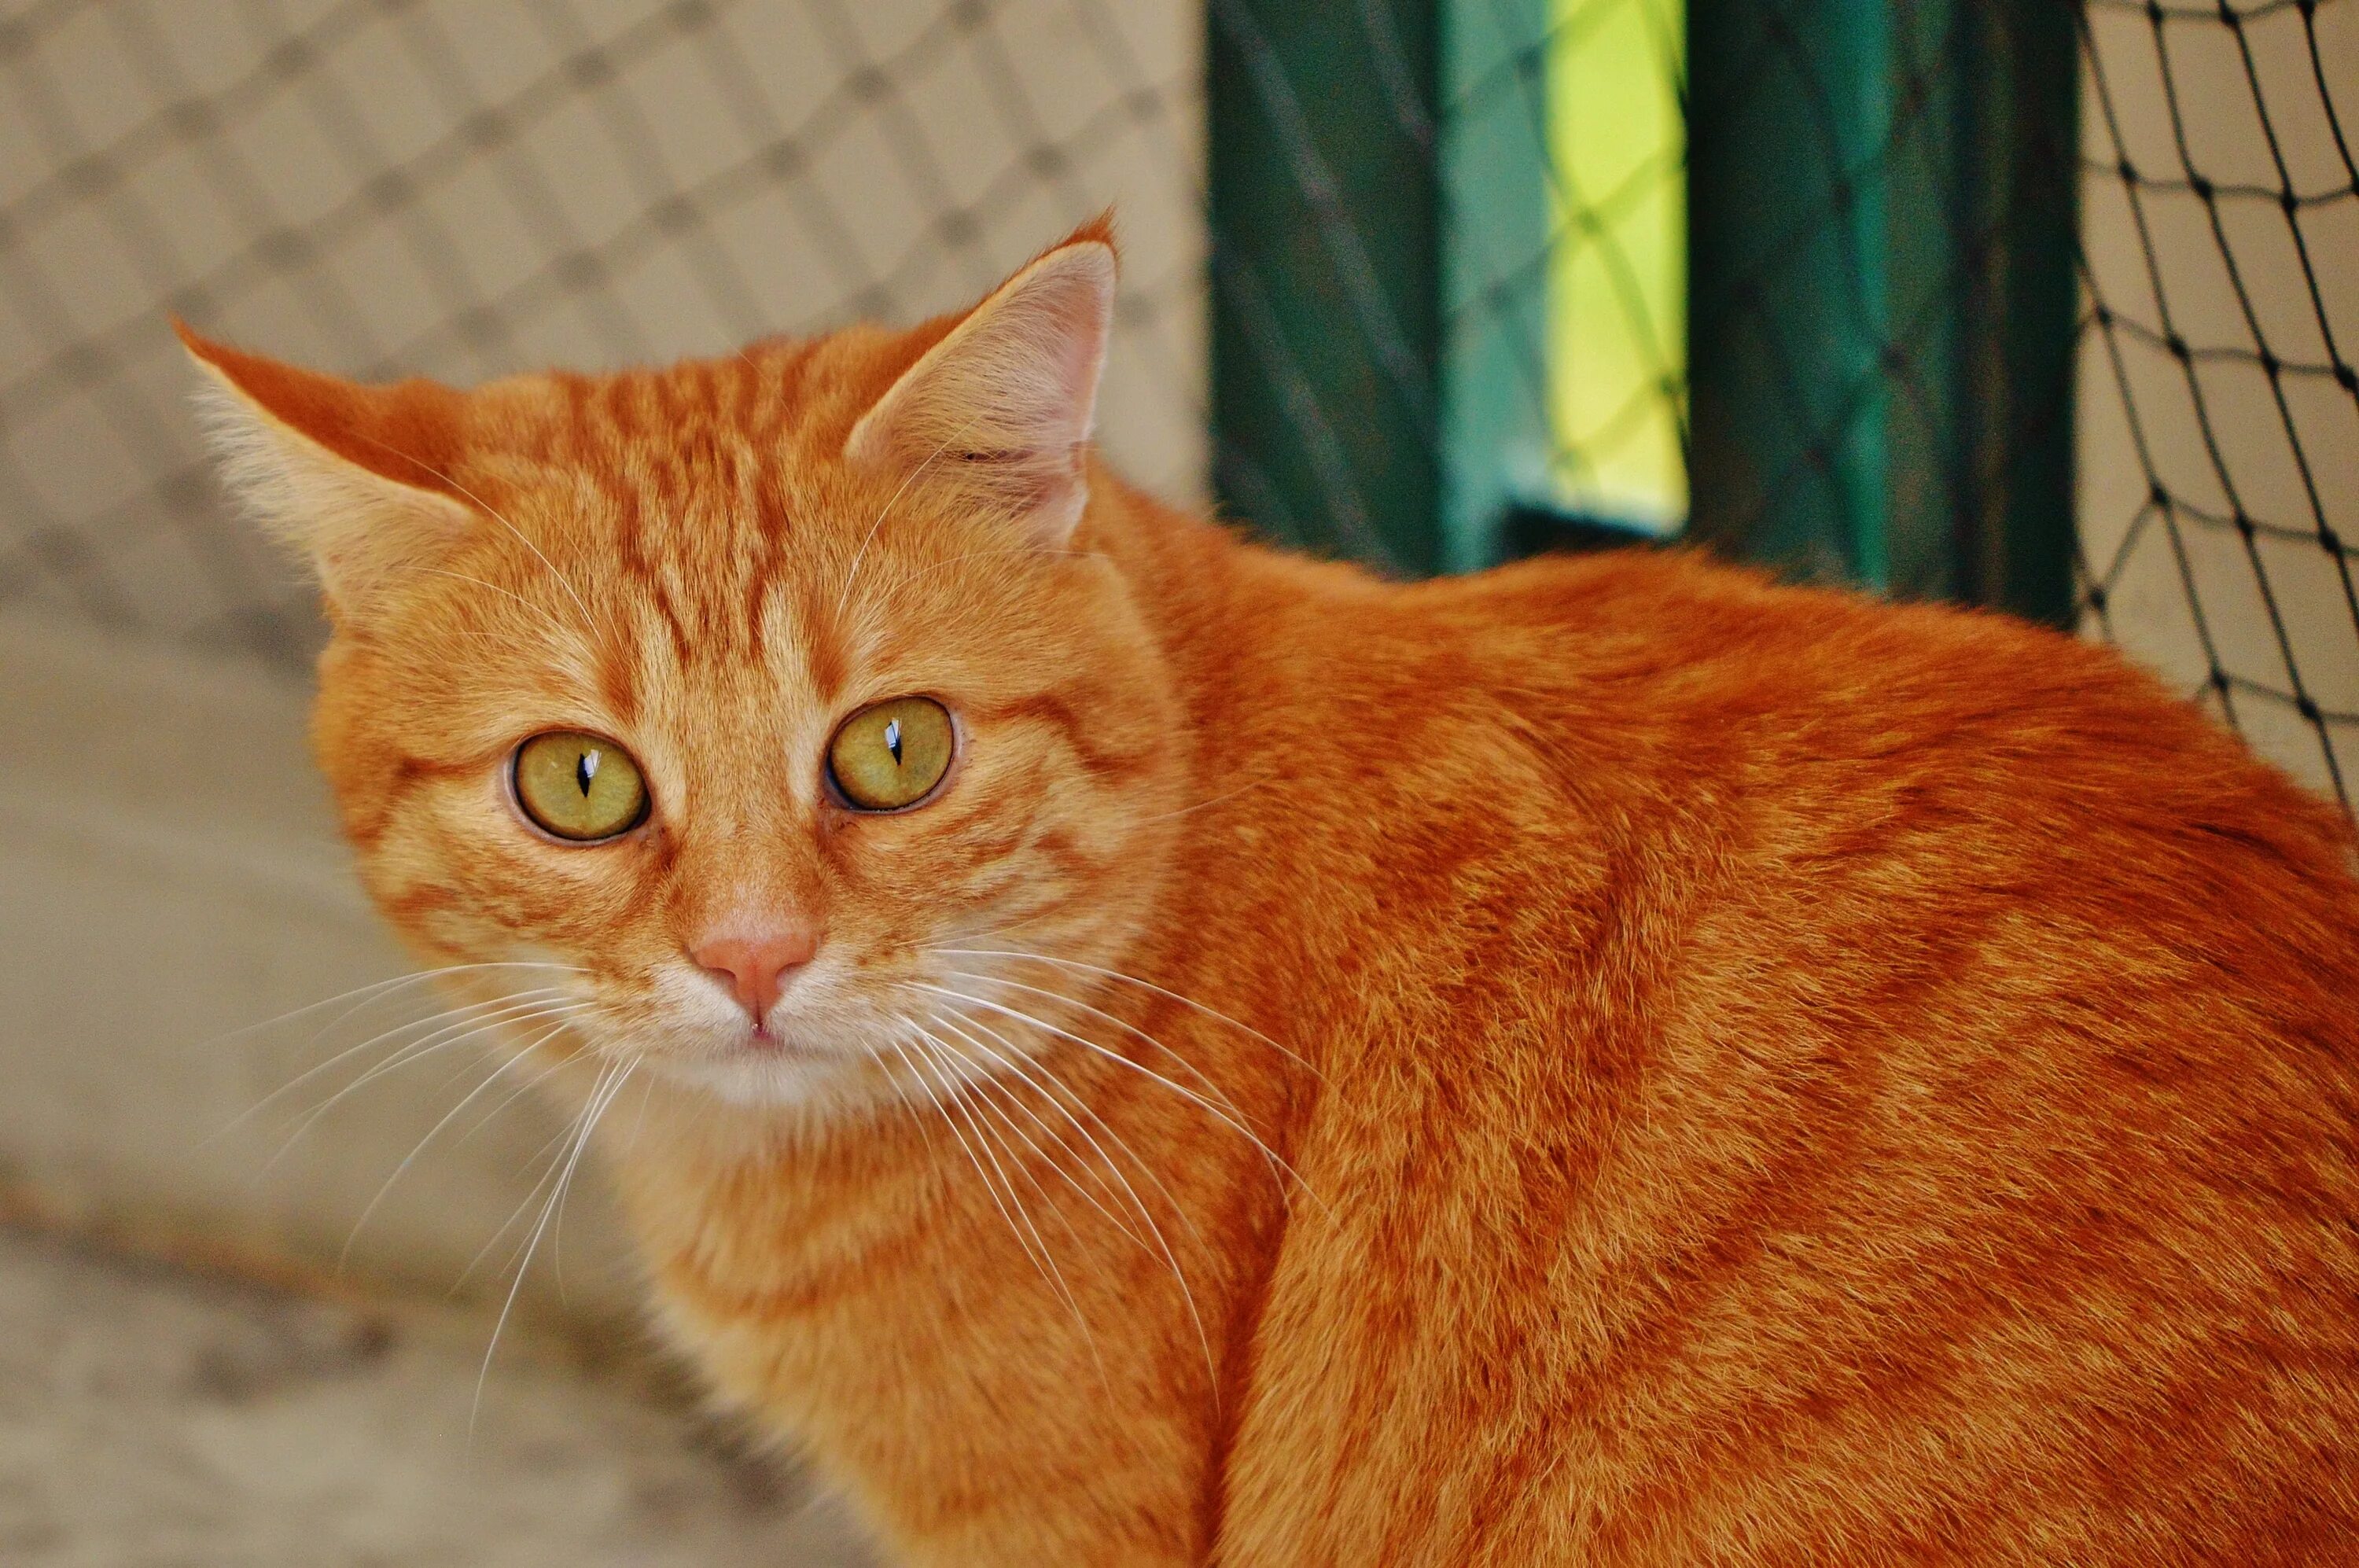 Европейская короткошерстная кошка рыжая. Аравийский МАУ рыжий. Европейская короткошерстная табби рыжий. Сибирский гладкошерстный рыжий кот. Покажи red cat